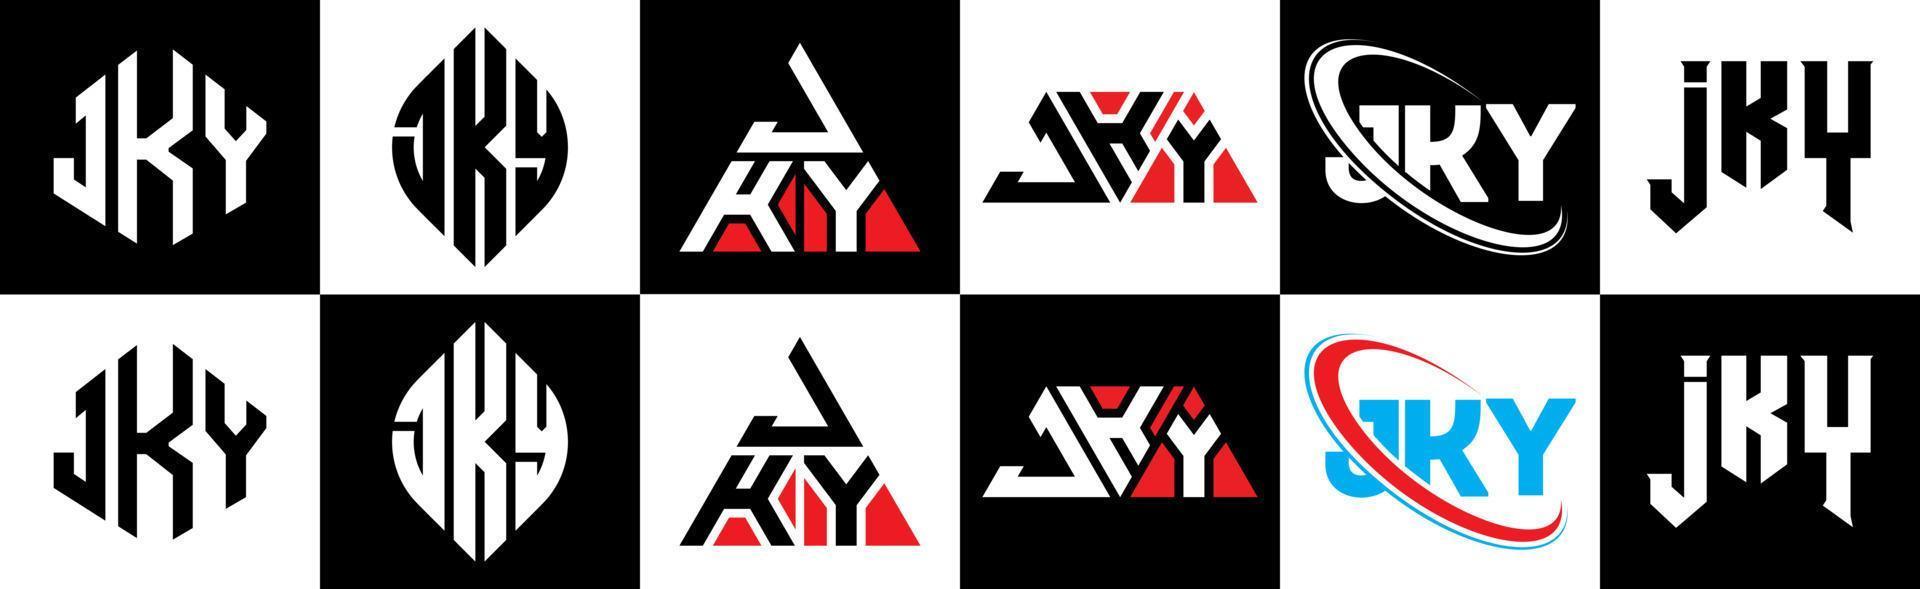 création de logo de lettre jky en six styles. polygone jky, cercle, triangle, hexagone, style plat et simple avec logo de lettre de variation de couleur noir et blanc dans un plan de travail. jky logo minimaliste et classique vecteur